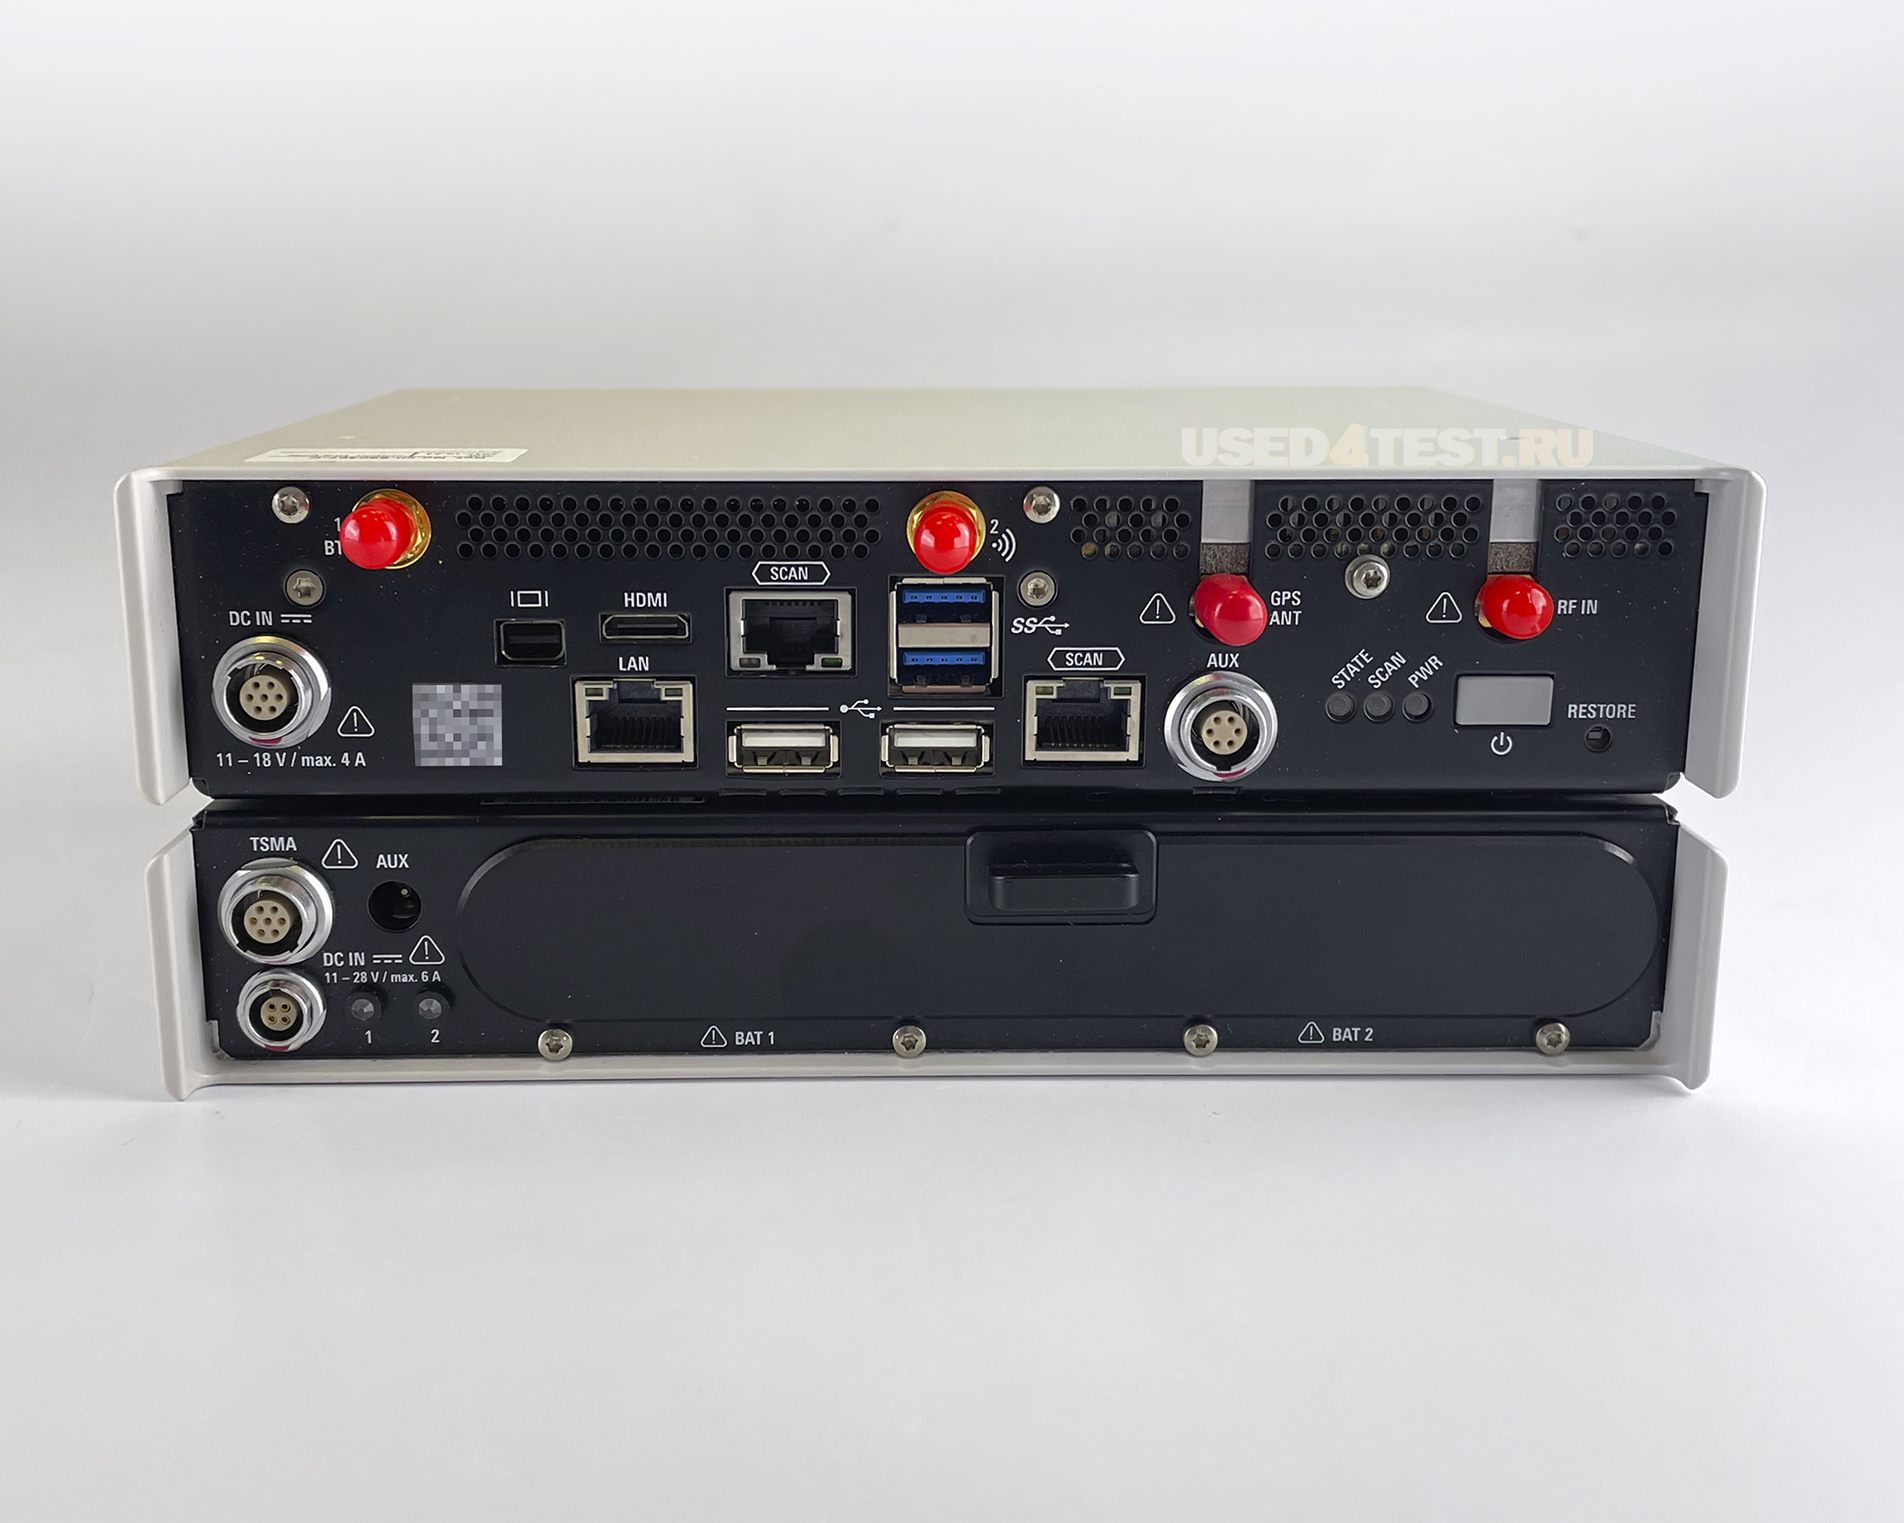 Портативный радиочастотный сканер мобильных сетейRohde&Schwarz TSMA
с диапазоном от 350 МГц до 4,4 ГГц


 В комплекте с опциями: TSMA-BAT, TSMA-BC2, TSMA-BP, TSMA-K61, TSMA-ZCB и TSMA-Z1
